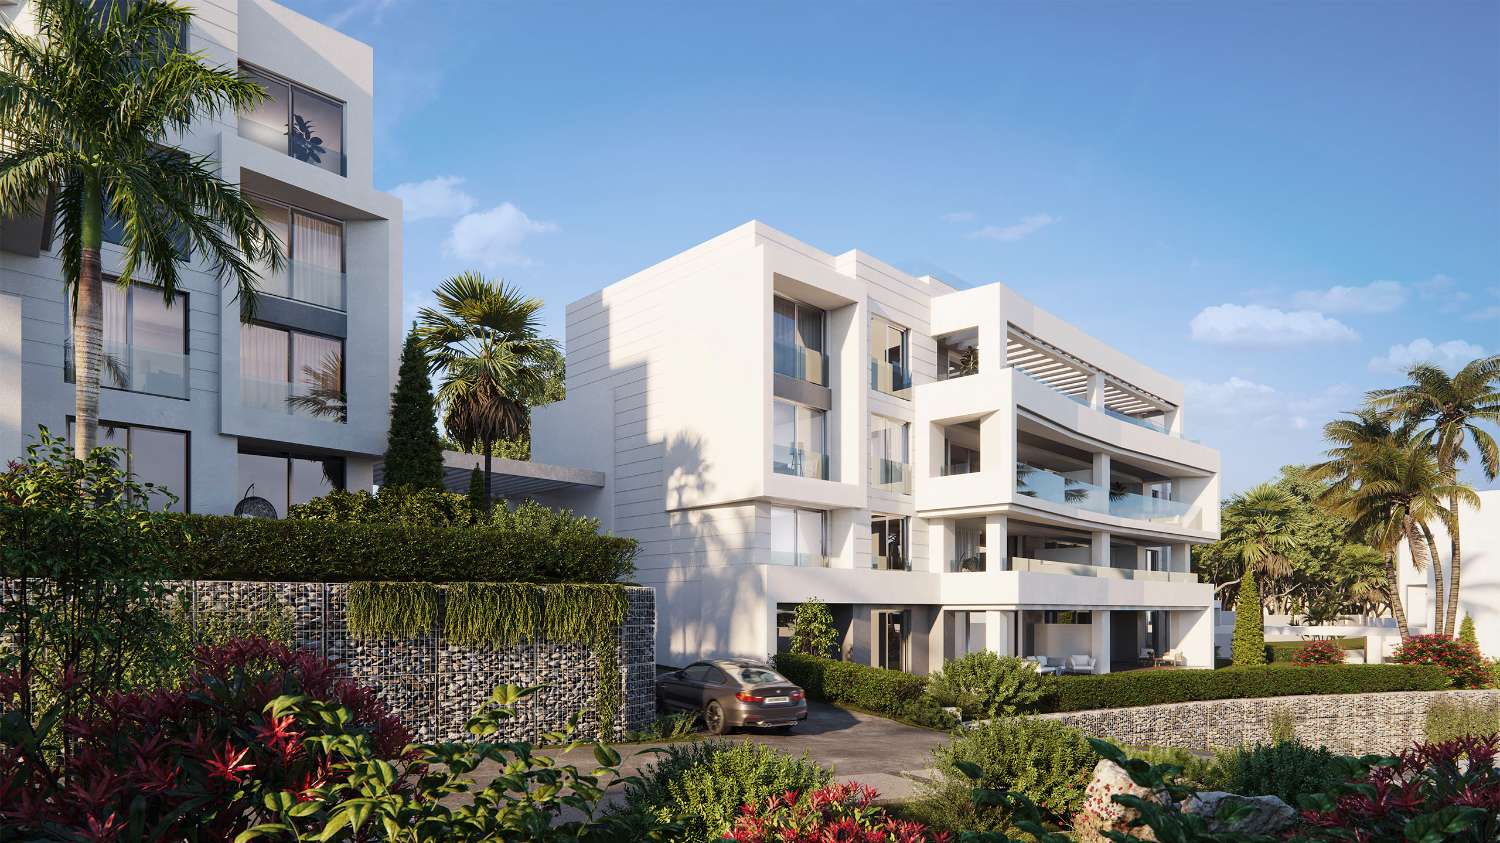 Amplio y exclusivo piso de cuatro dormitorios con jardín privado de 221 m2 en Resort en Marbella, en primera línea de campo de golf